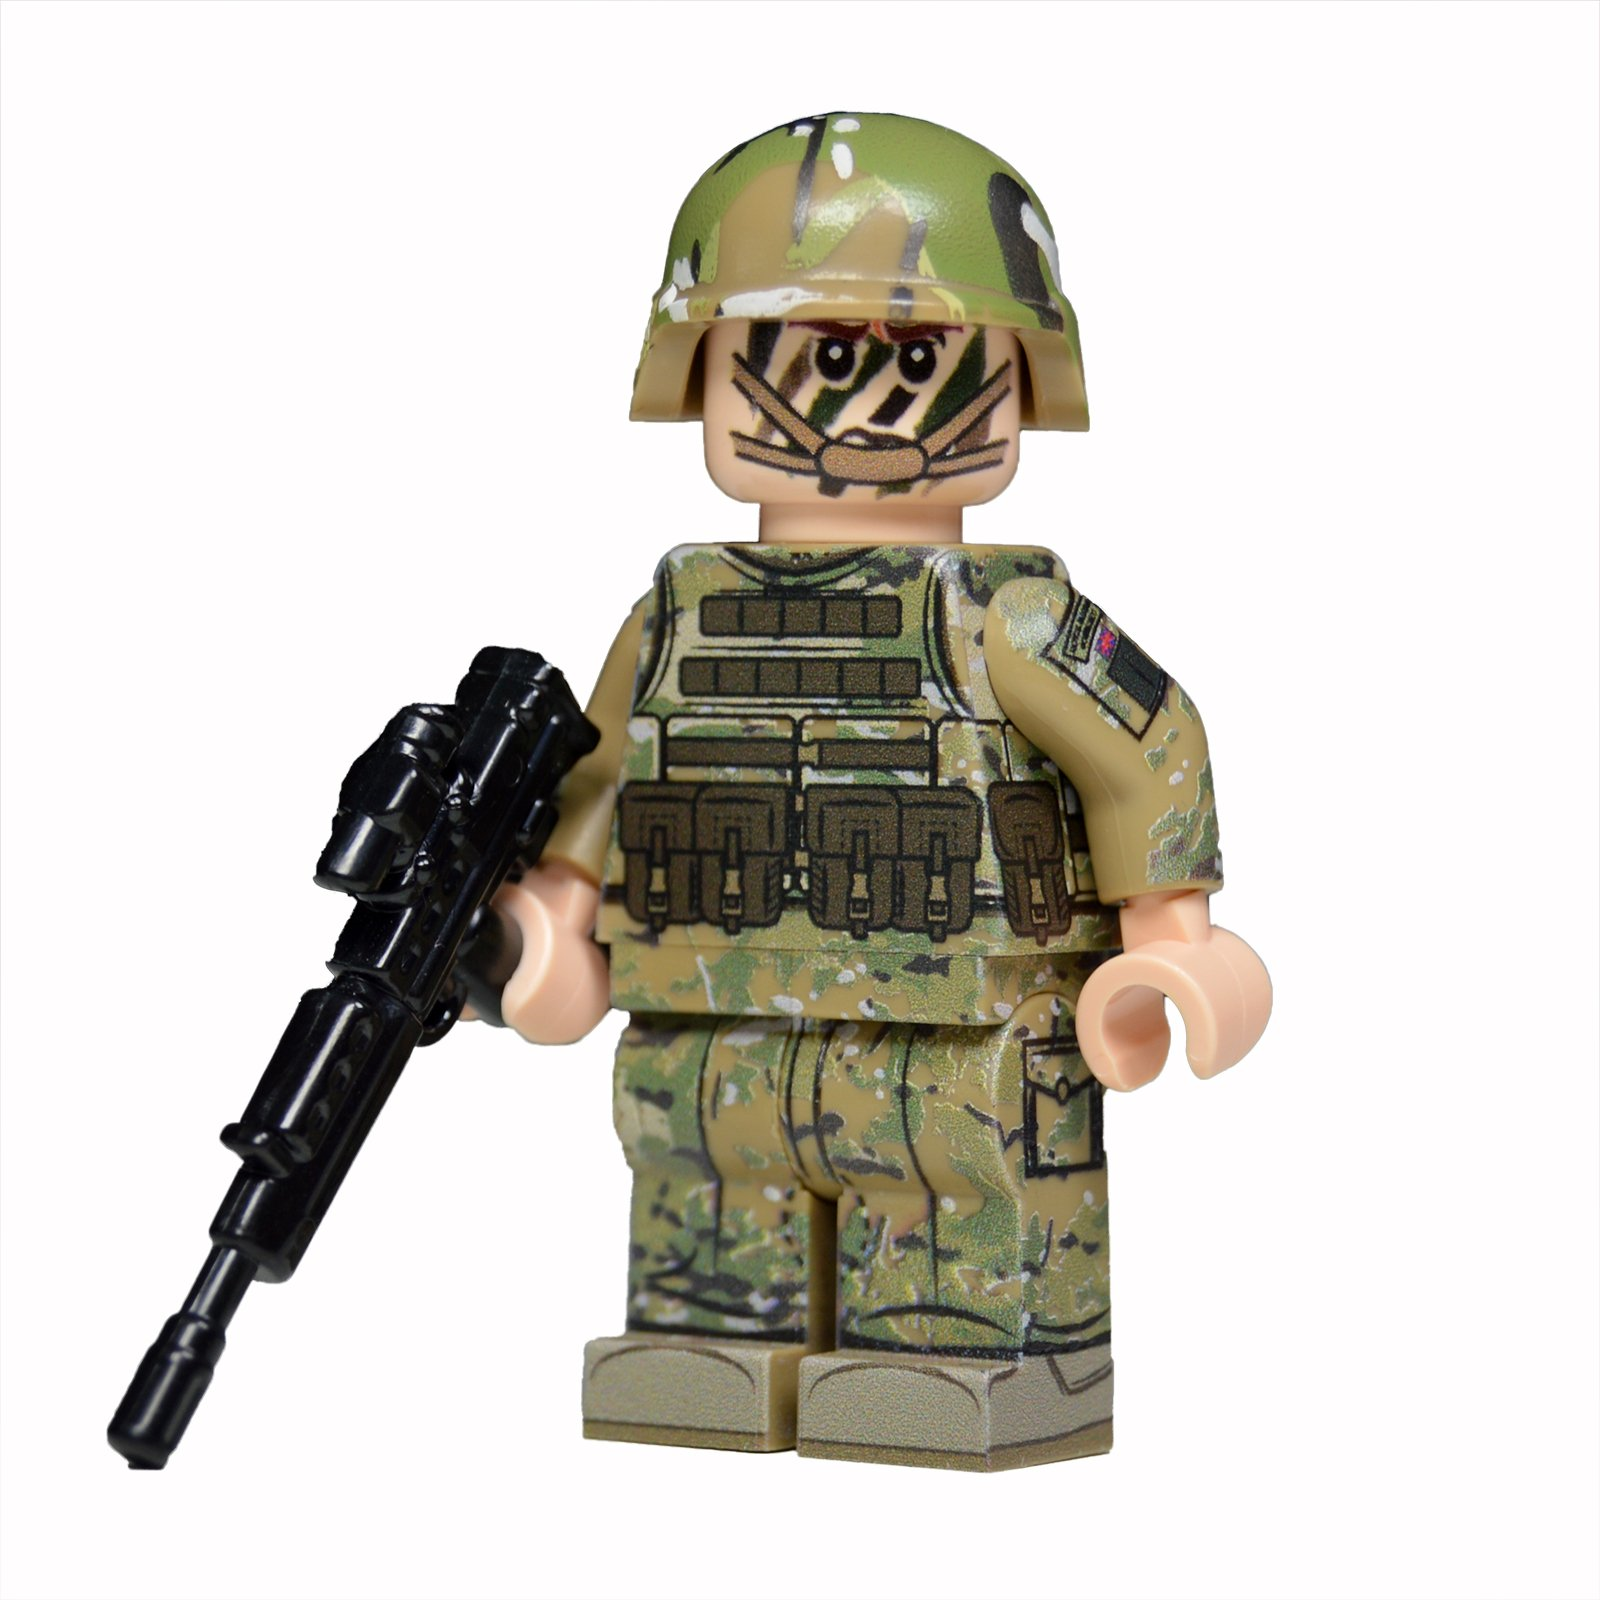 Войны фигурок. Лего кастом БРИКС минифигурки солдат ВДВ. Лего военные минифигурки. LEGO Ratnik TMC. Пехотинцы 337 корпуса лего кастом.